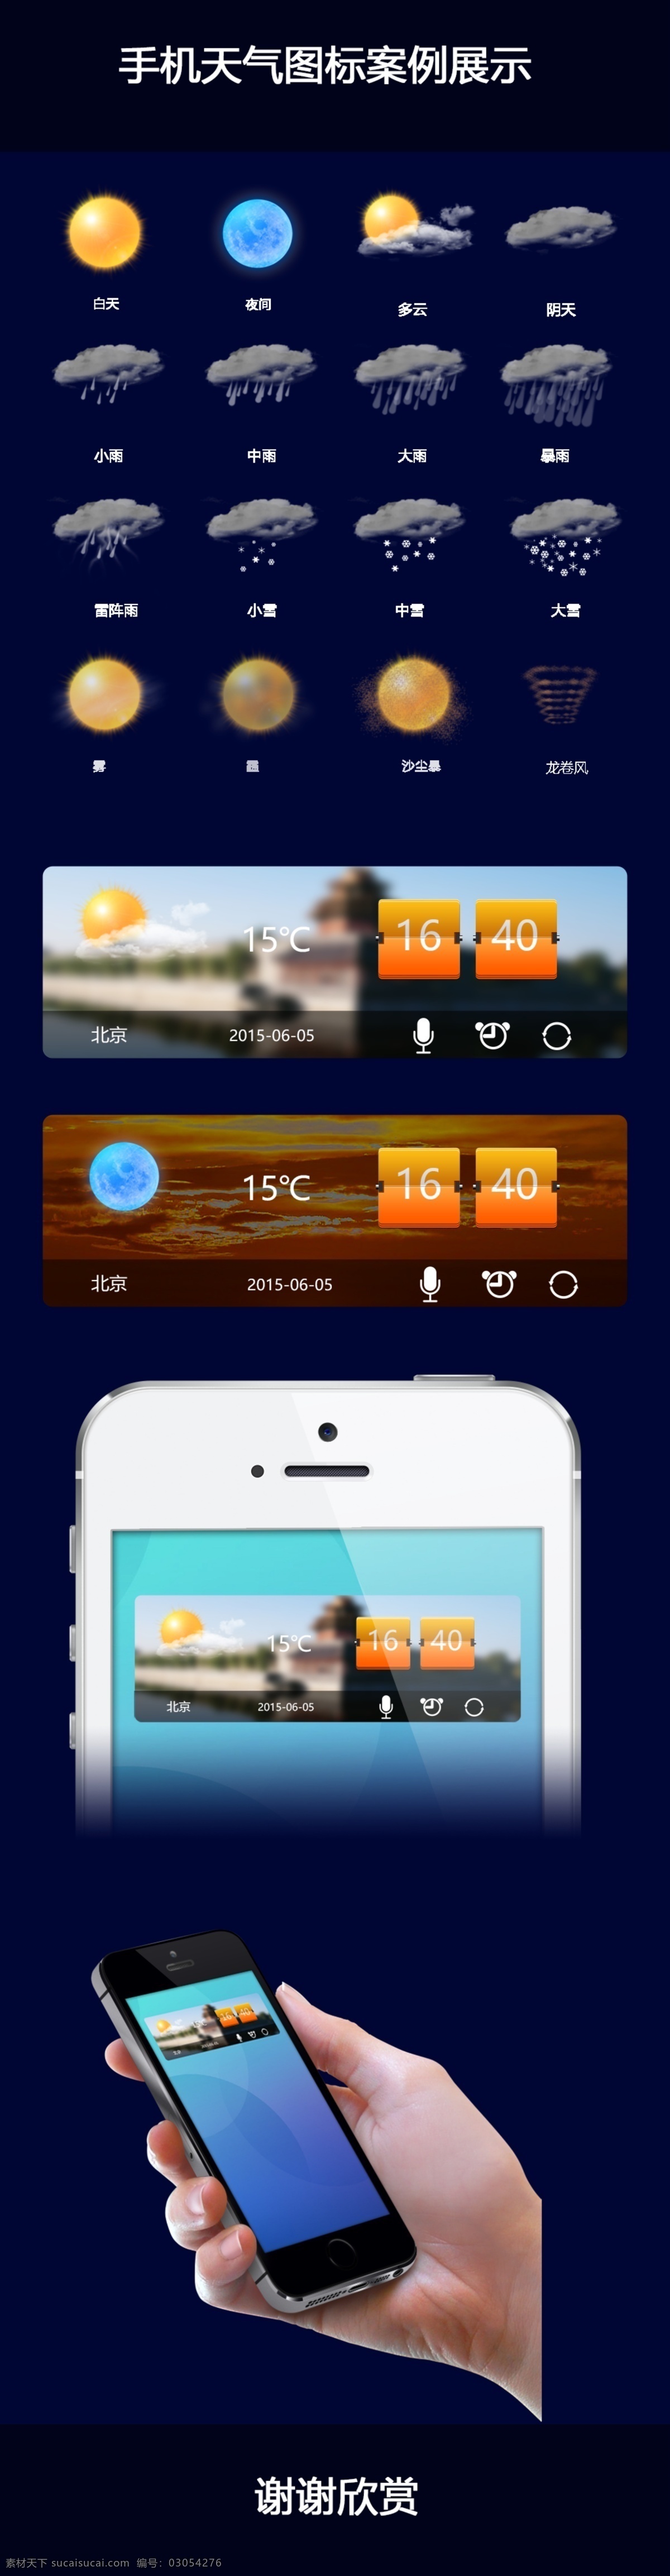 天气 图标 icon 控件 天气控件设计 天气图标 图标设计 天气icon 手机天气主题 手机主题 手机天气展示